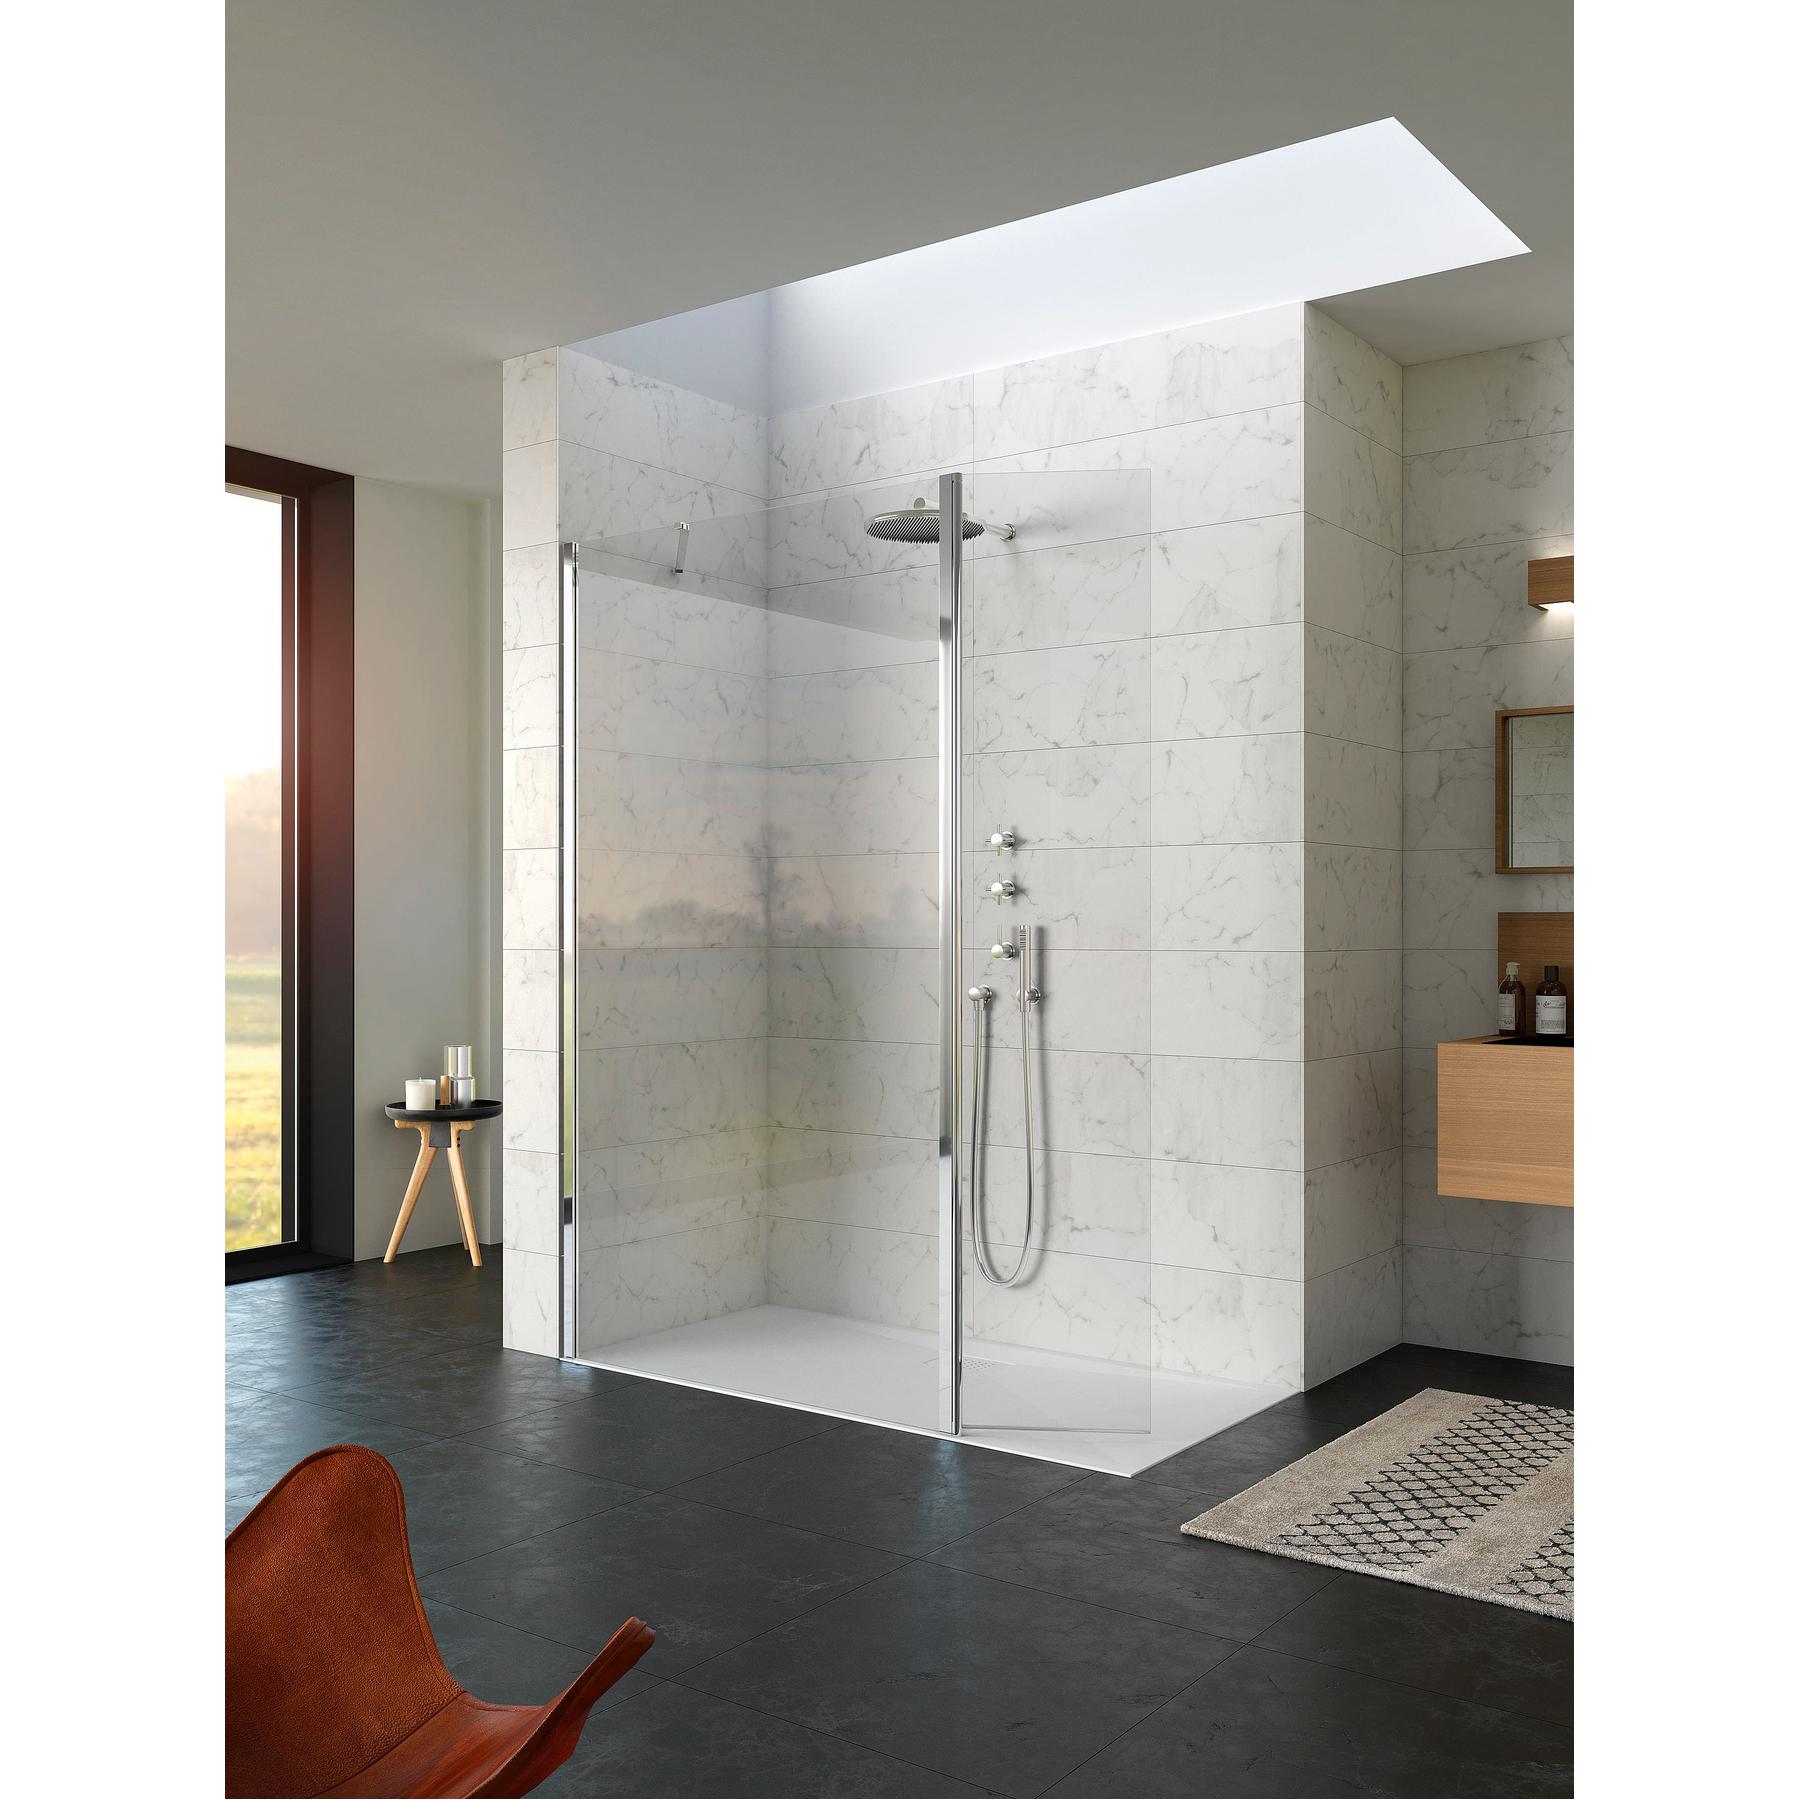 Paroi de douche fixe hauteur 2m largeur 1.60m avec porte pivotante à 180 degrés KINEQUARTZ Duo fixation charnière murale chromées verre transparent 